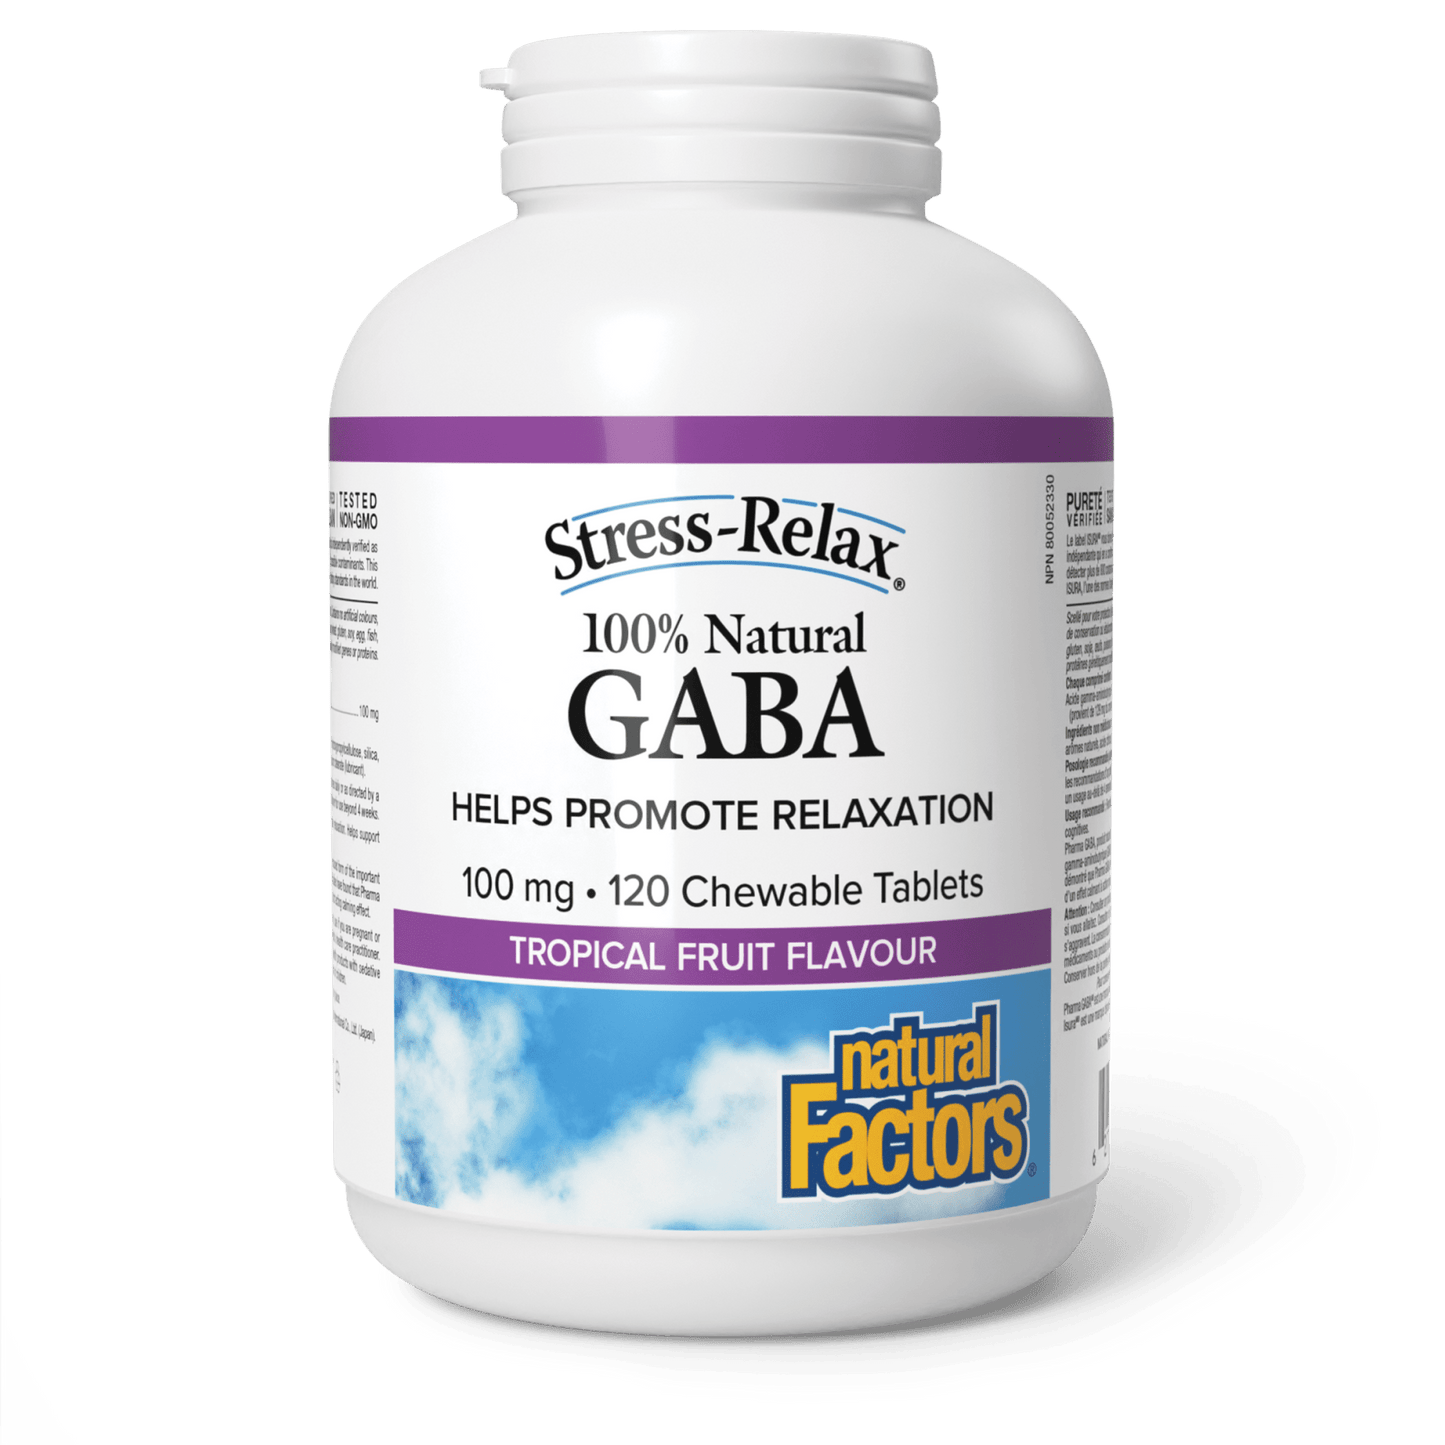 100% Natural GABA 100 mg, Tropical Fruit, Stress-Relax, Natural Factors|v|image|2842